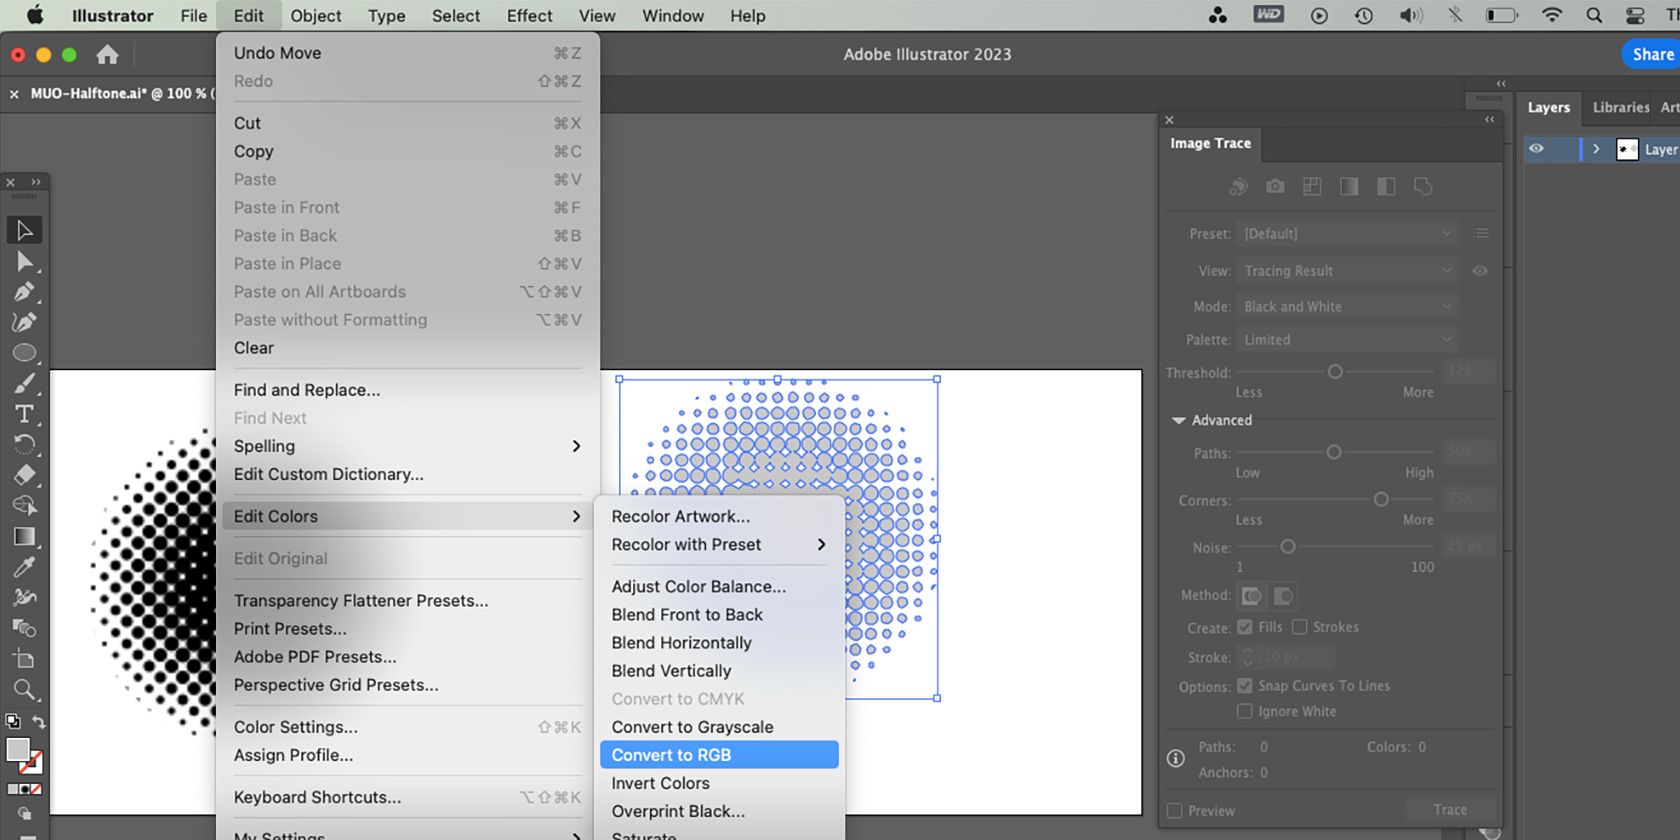 Adobe Illustrator Edit Colors menu